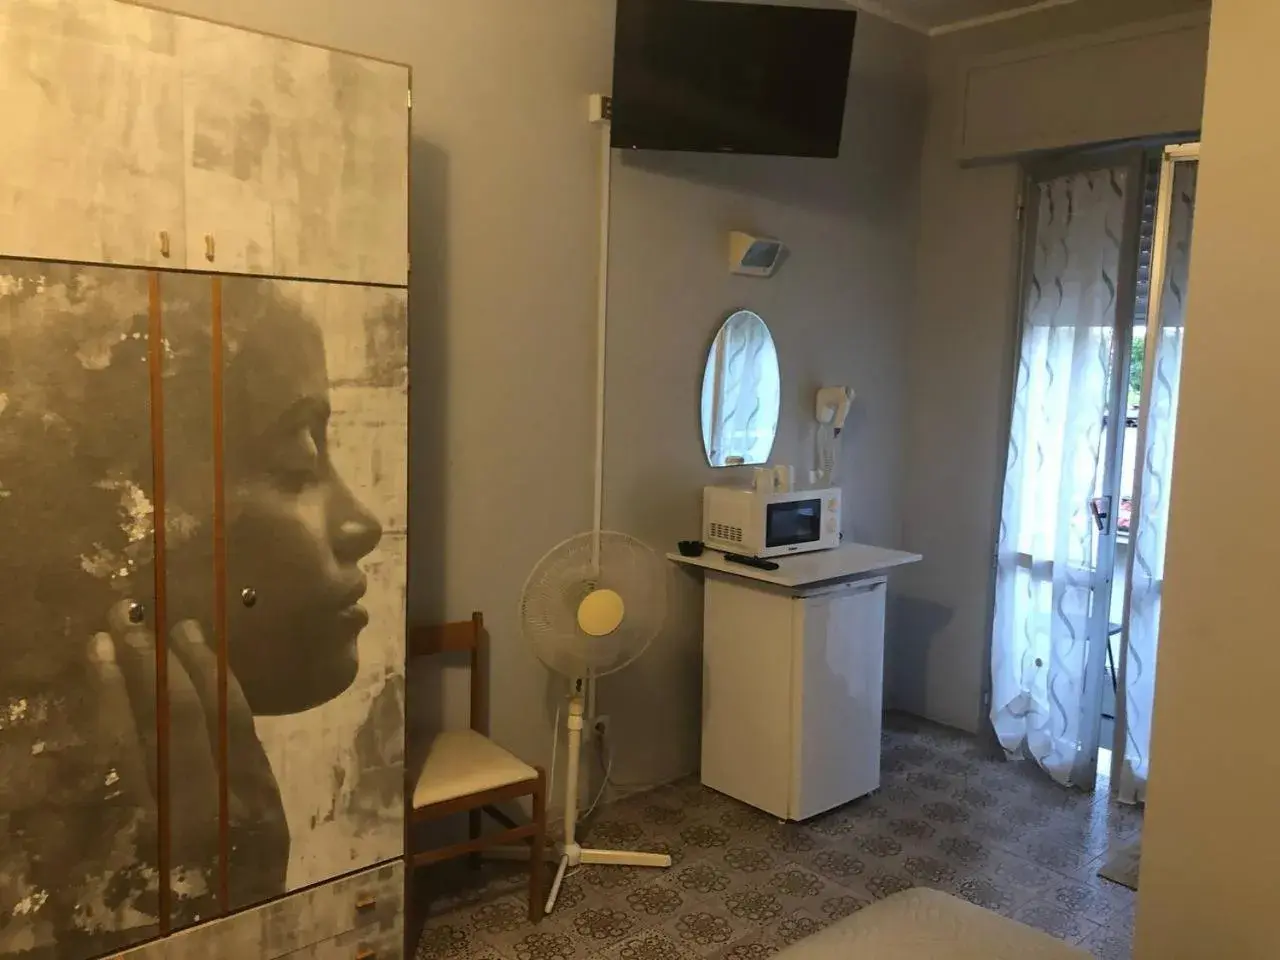 Bedroom, TV/Entertainment Center in Hotel Wega